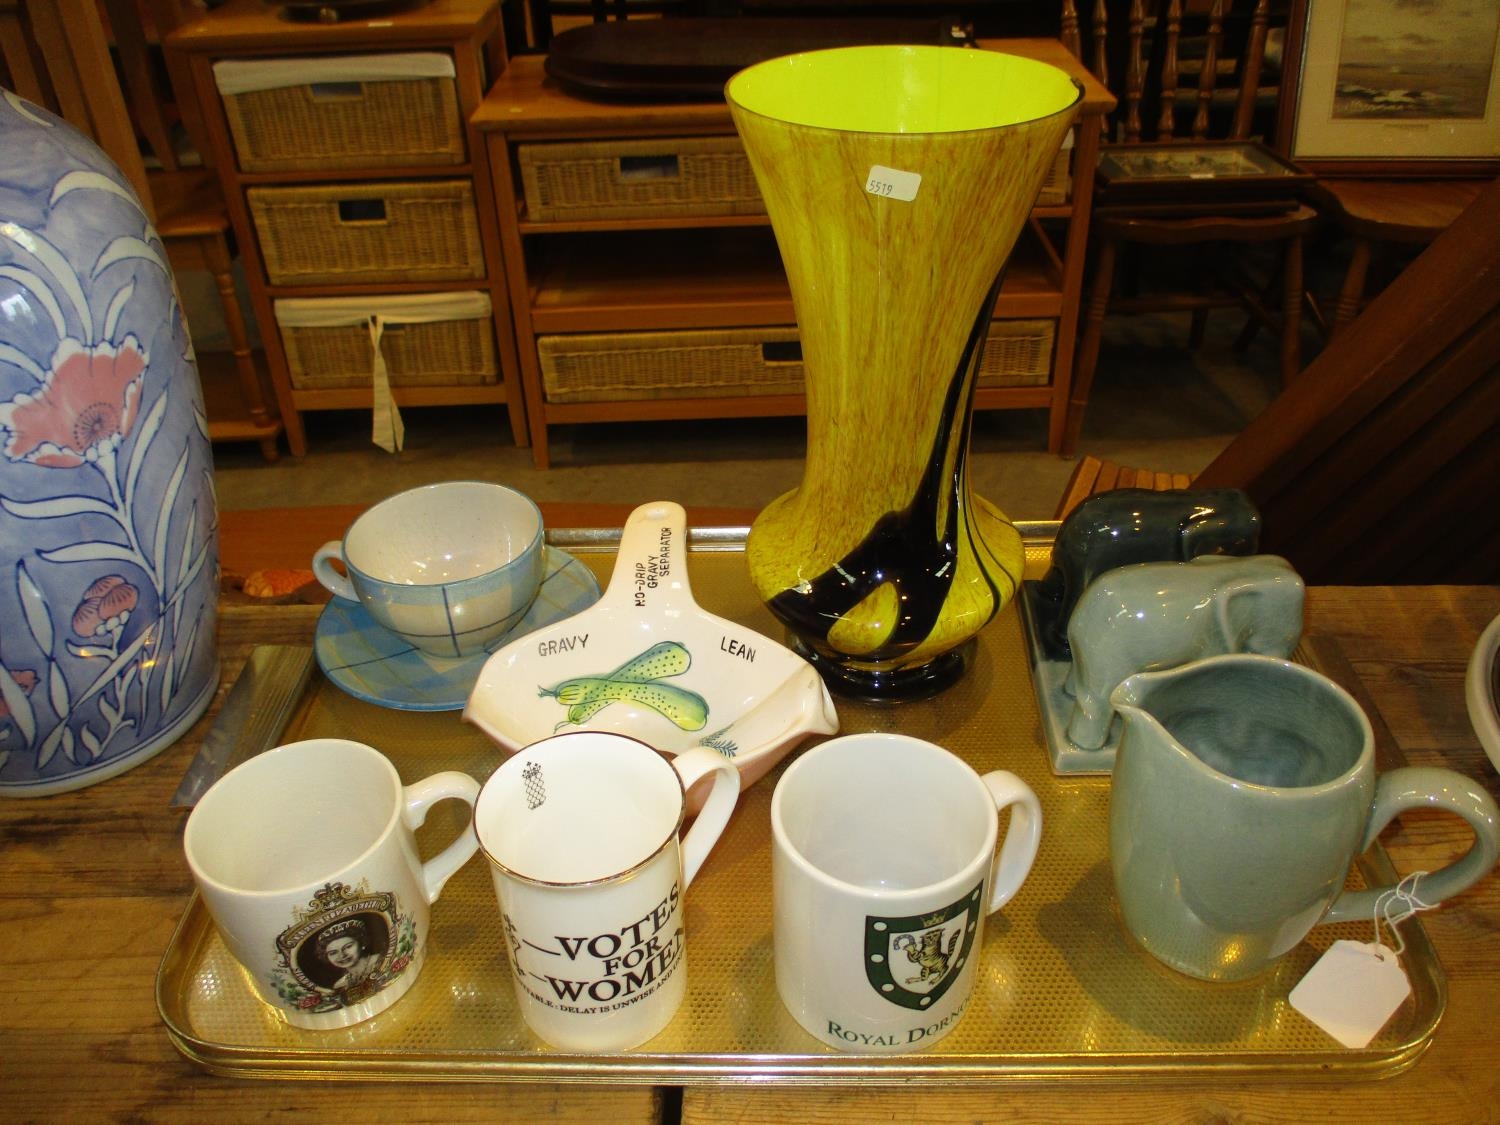 Decorative Glass Vase, Elephant Group, Mugs etc